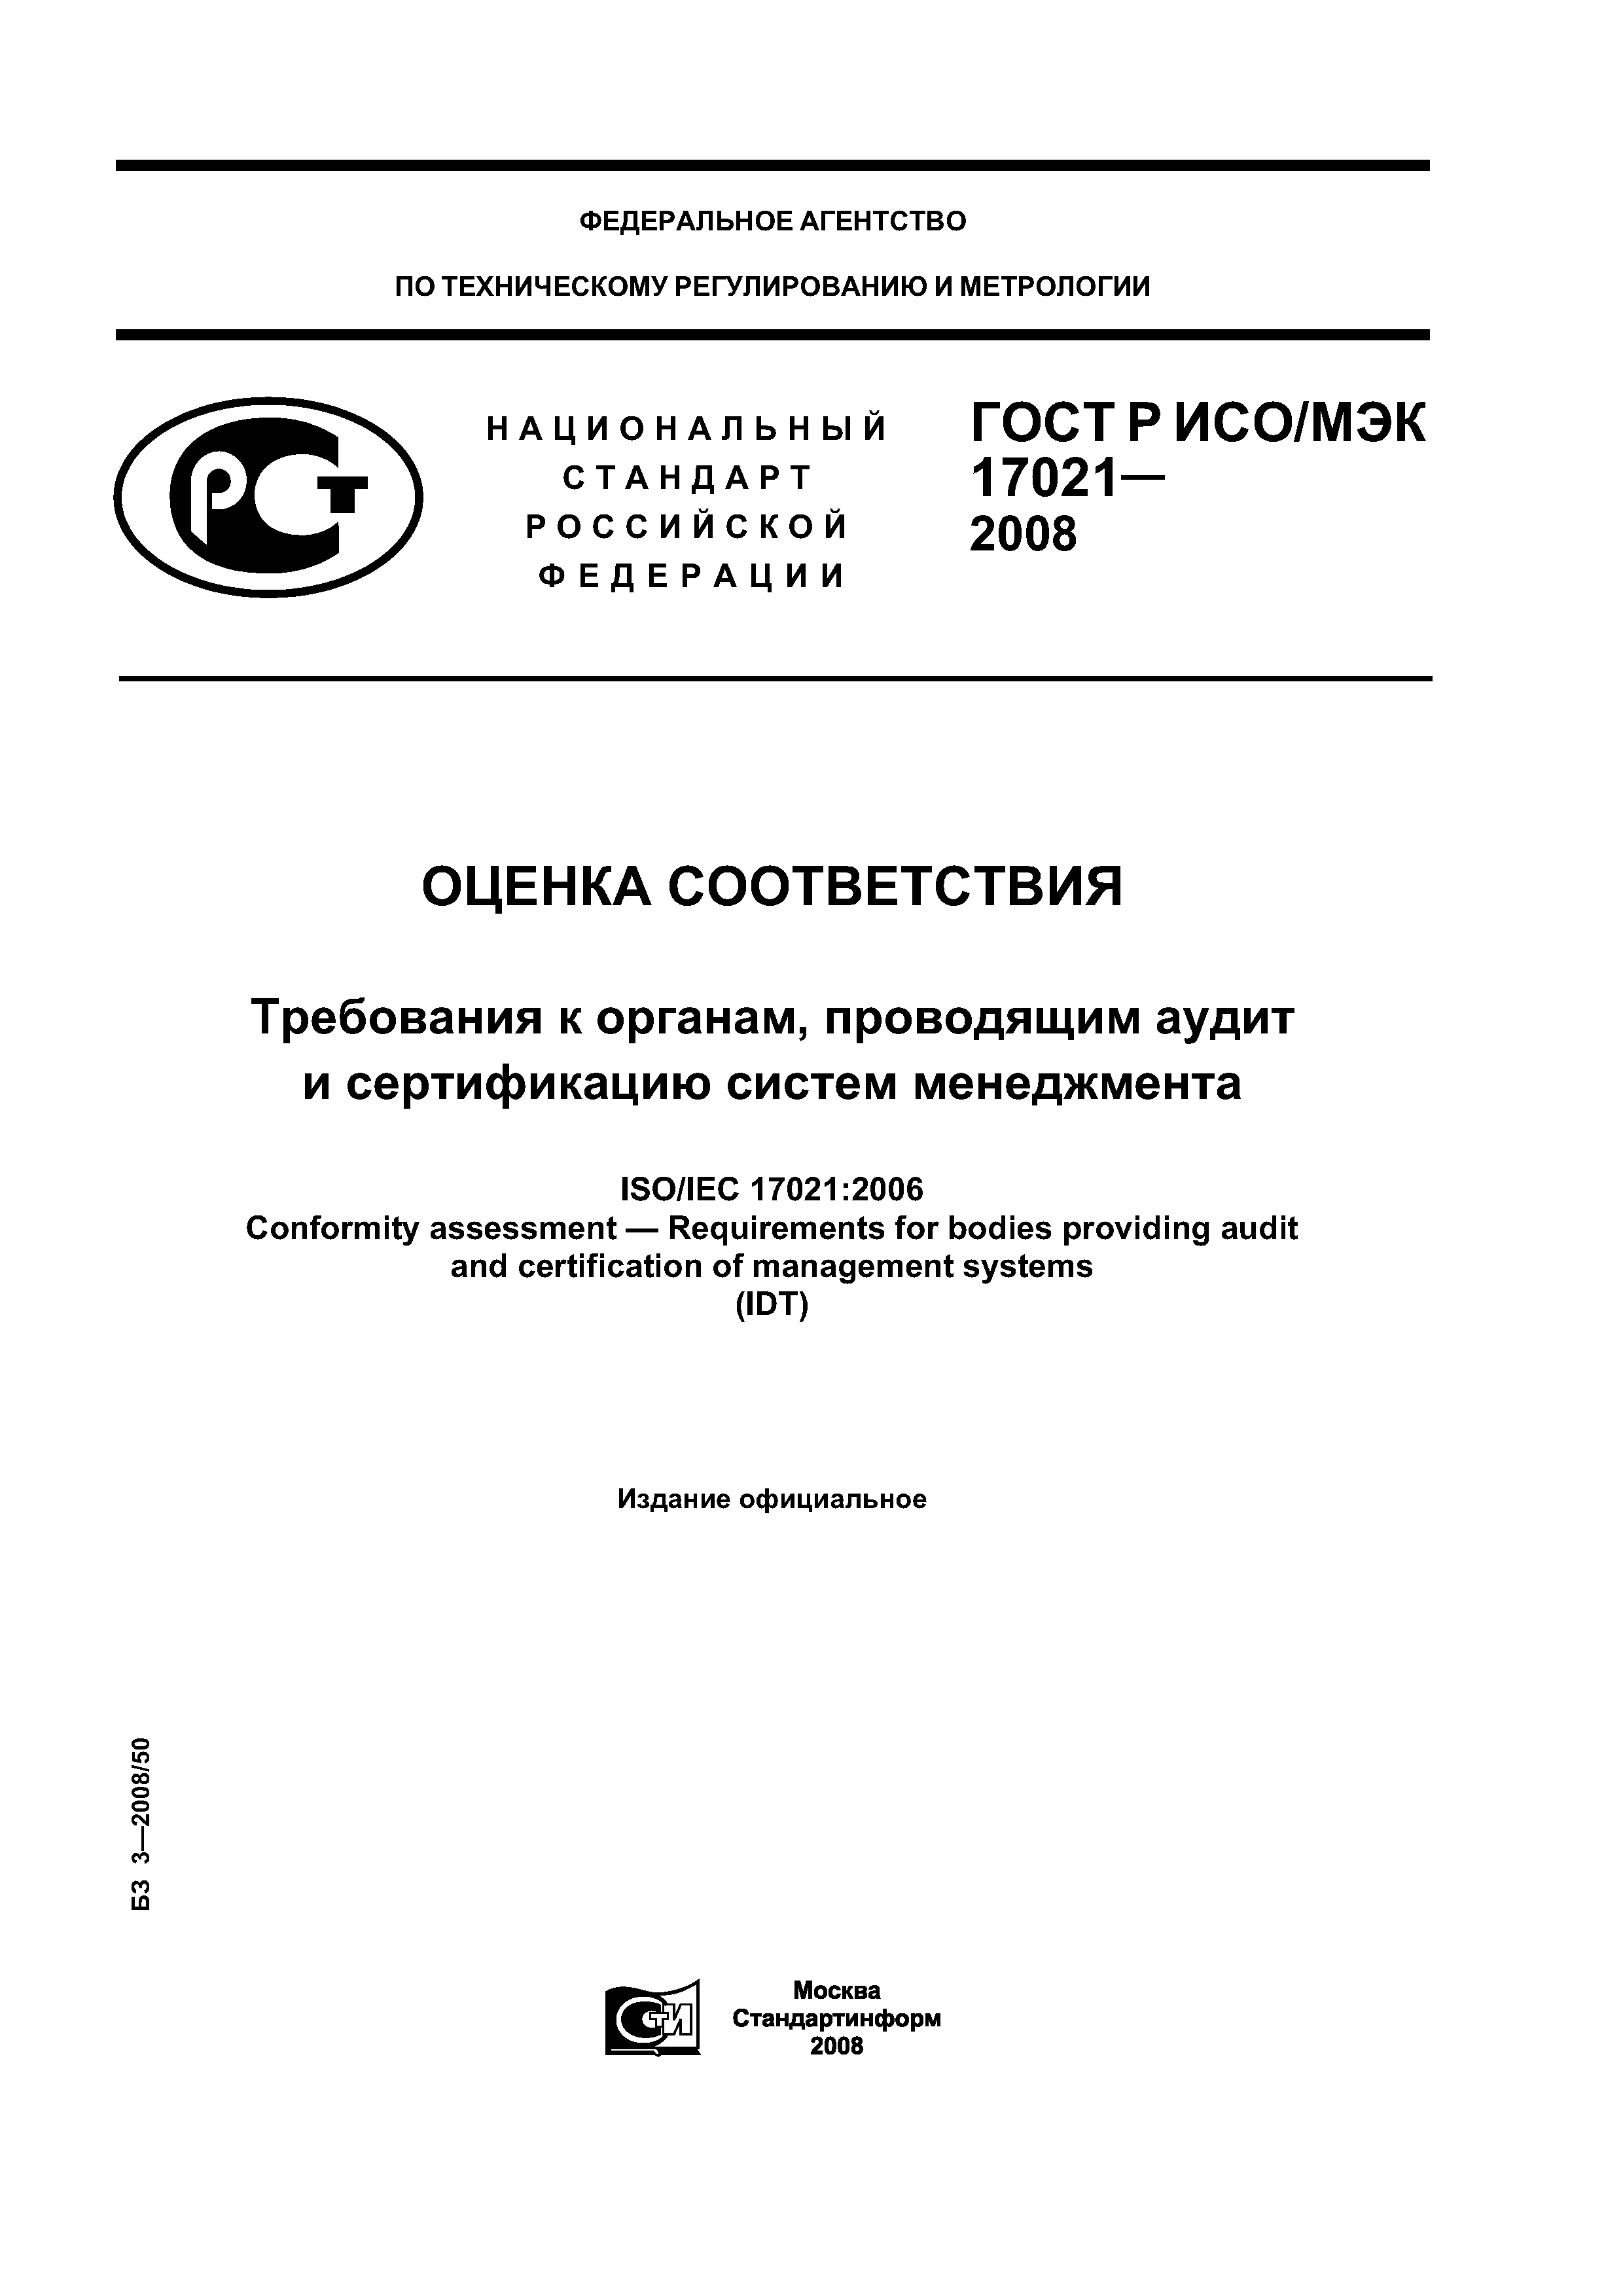 ГОСТ Р ИСО/МЭК 17021-2008